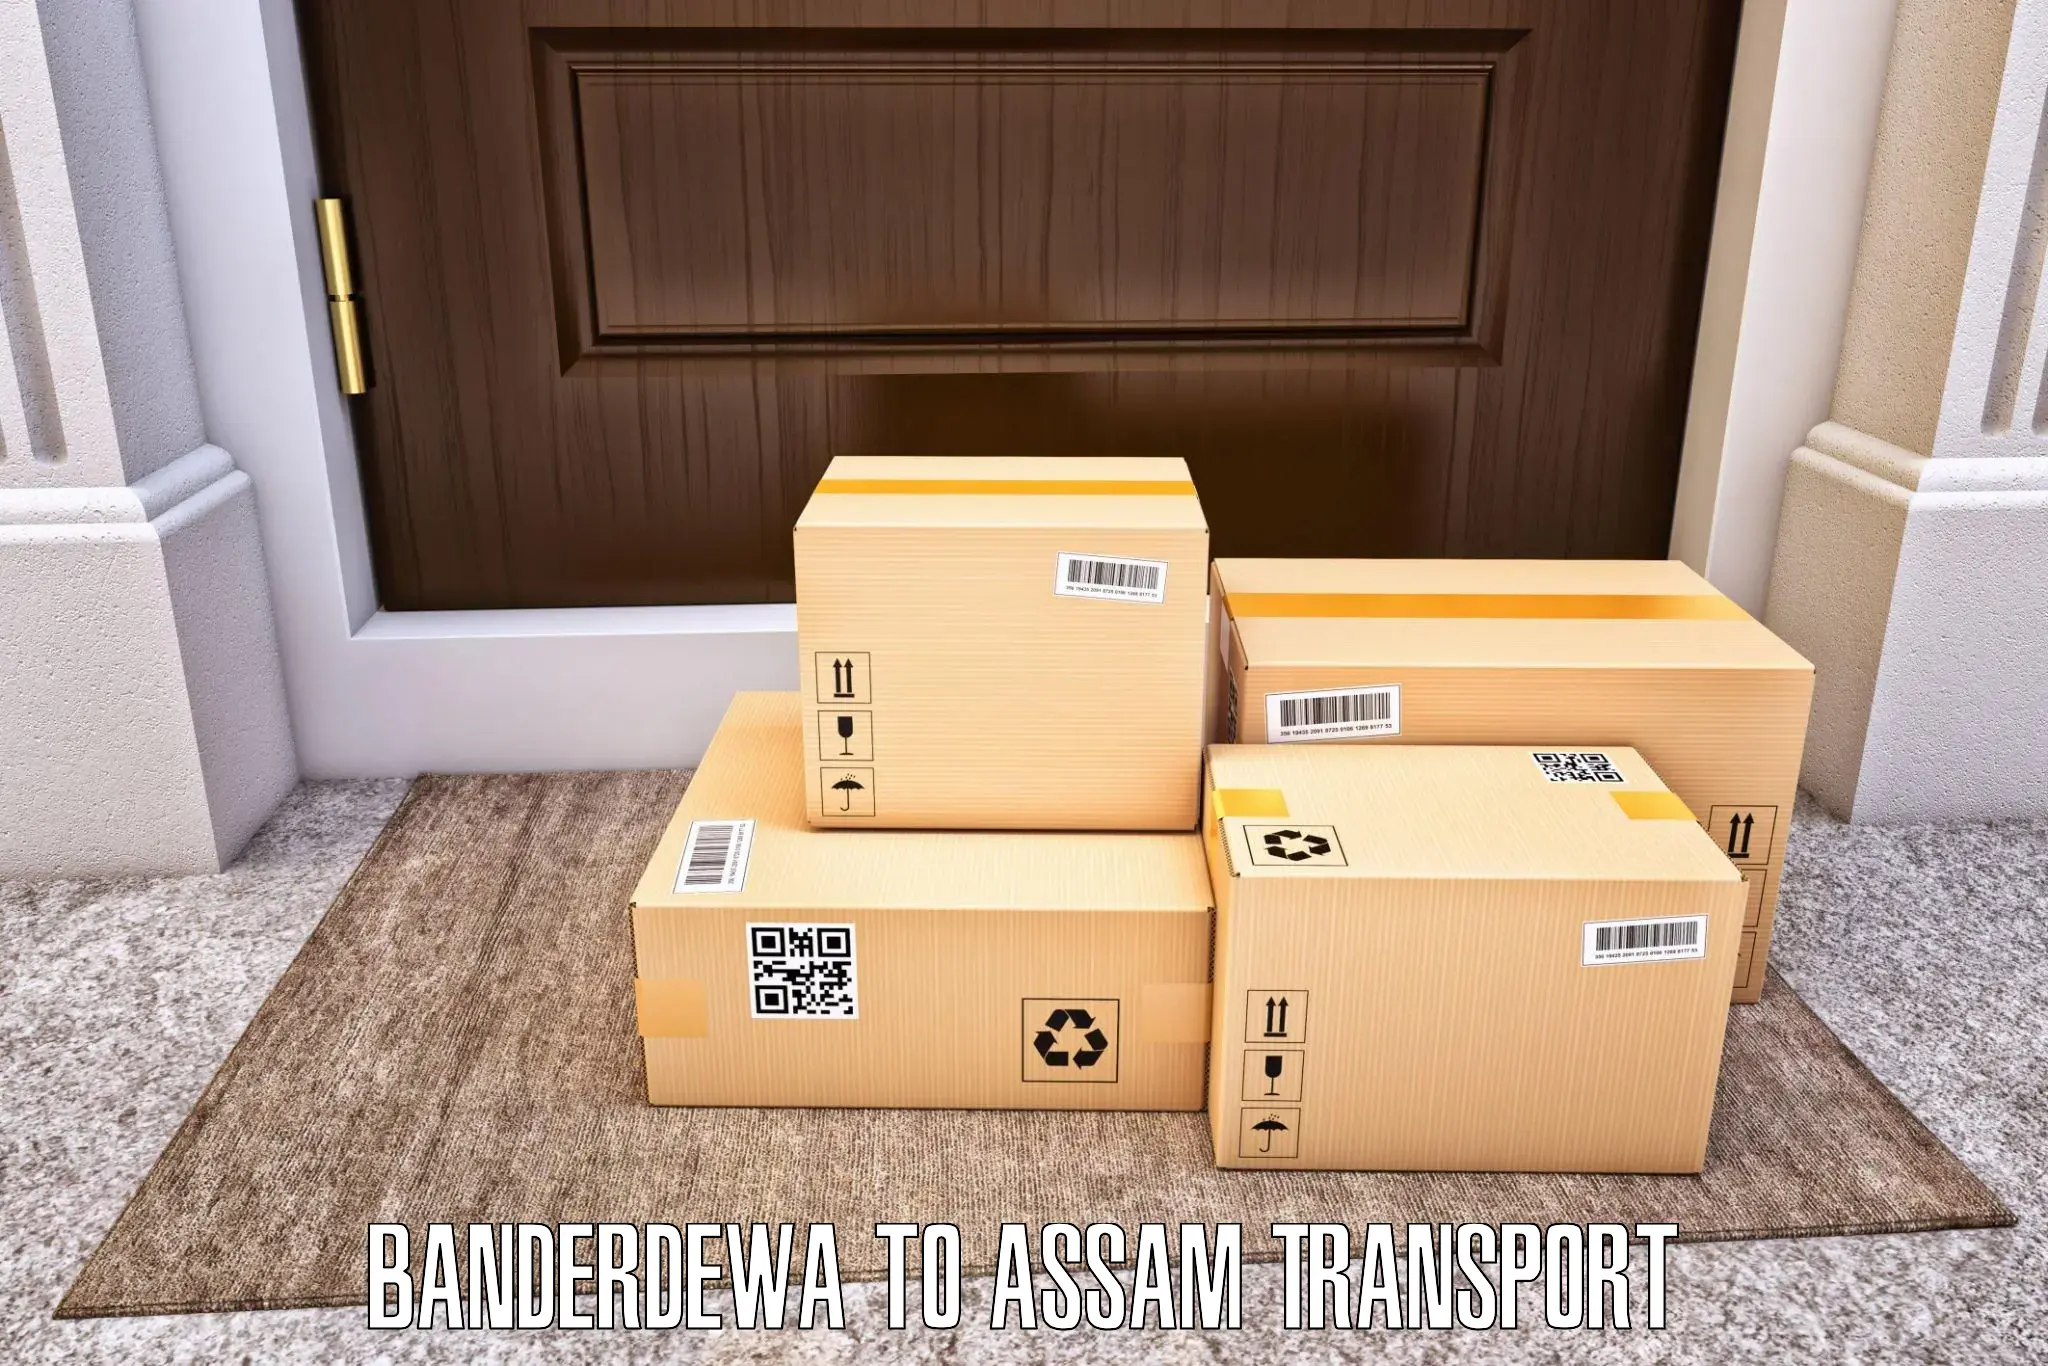 Interstate transport services Banderdewa to Assam